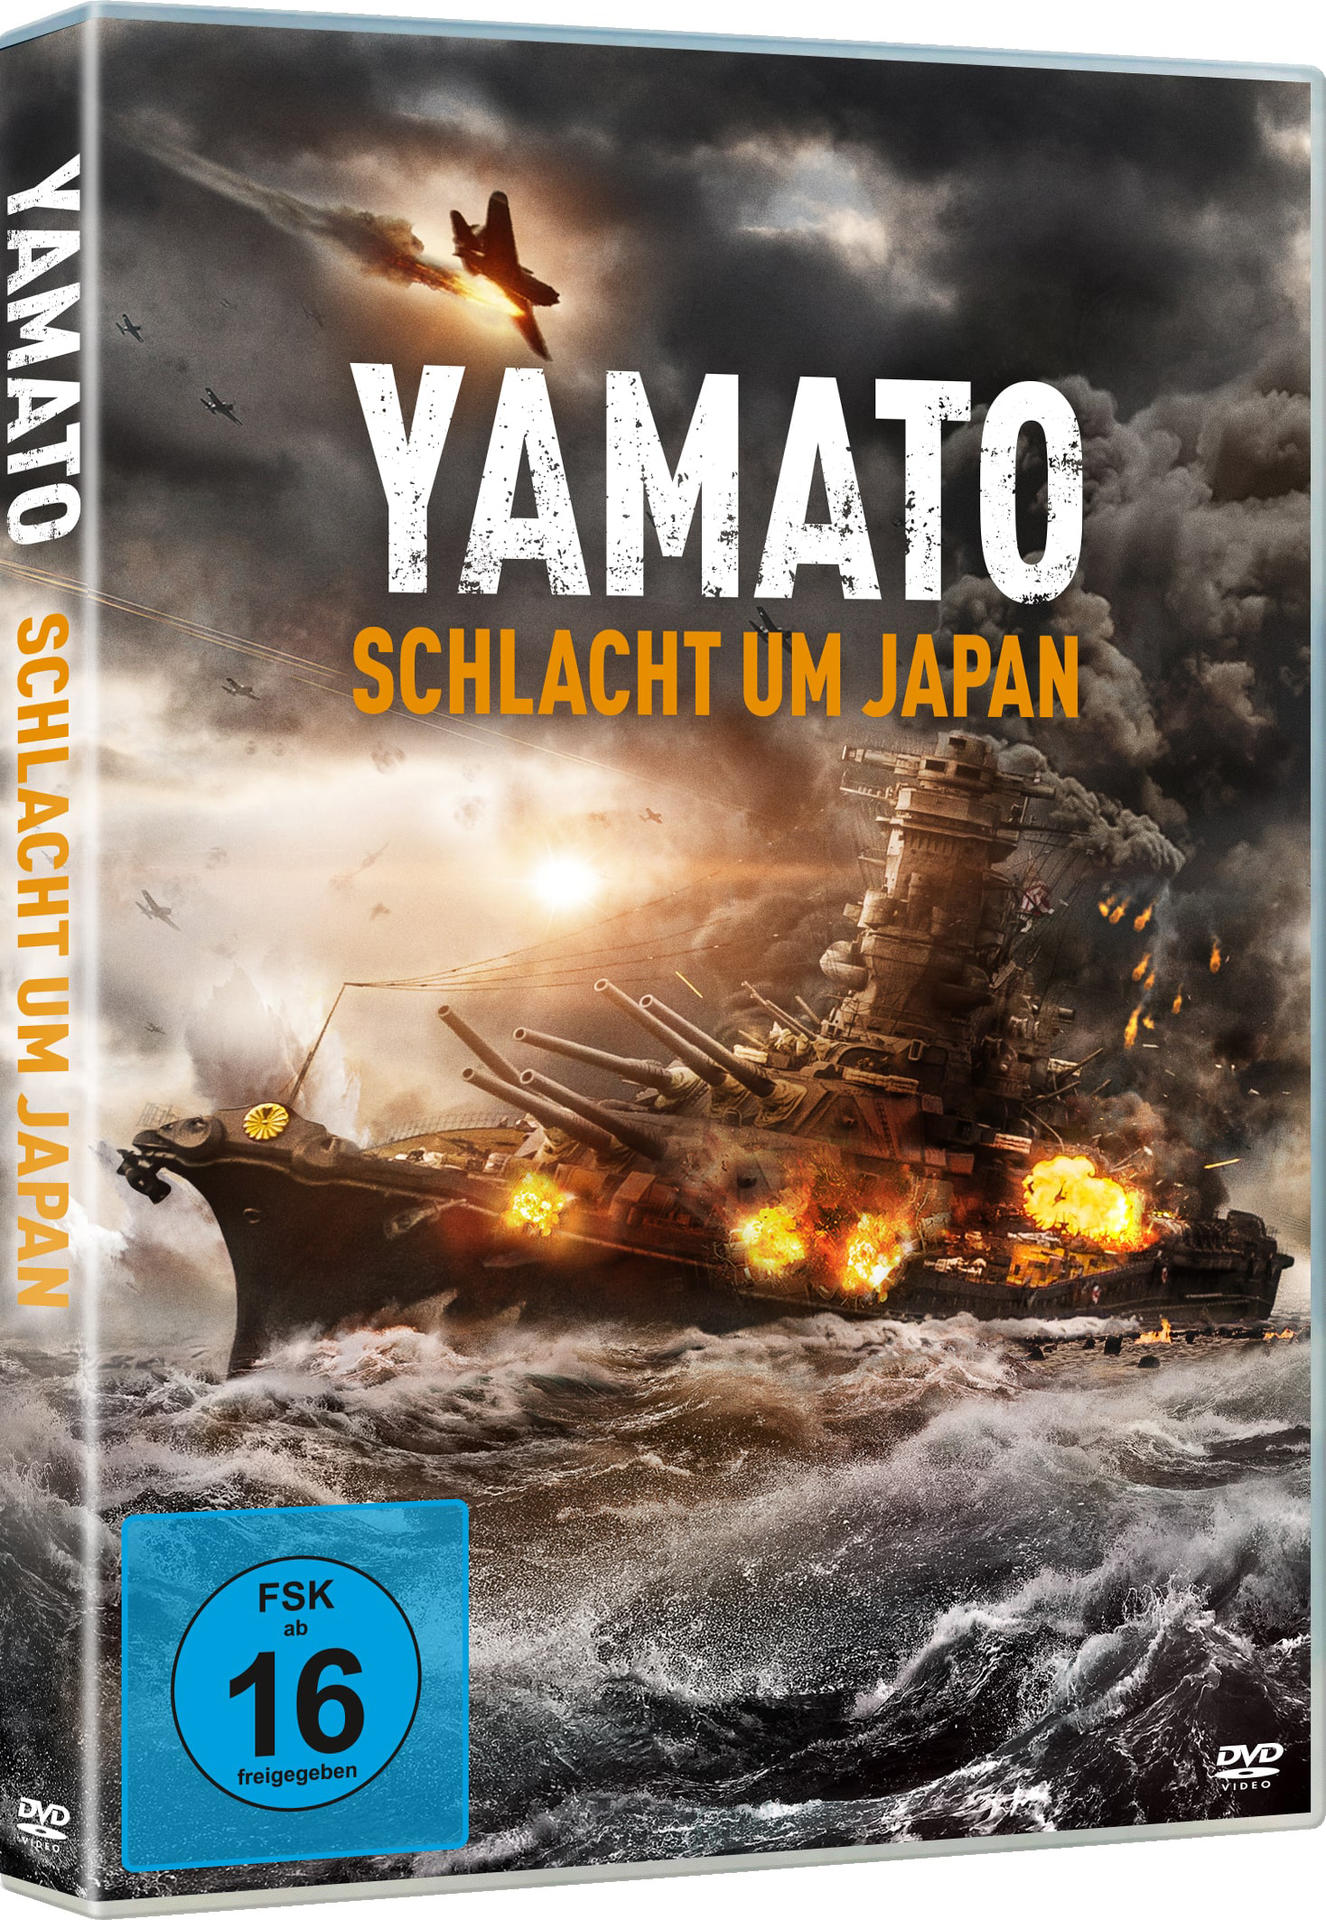 Yamato - Schlacht um Japan DVD